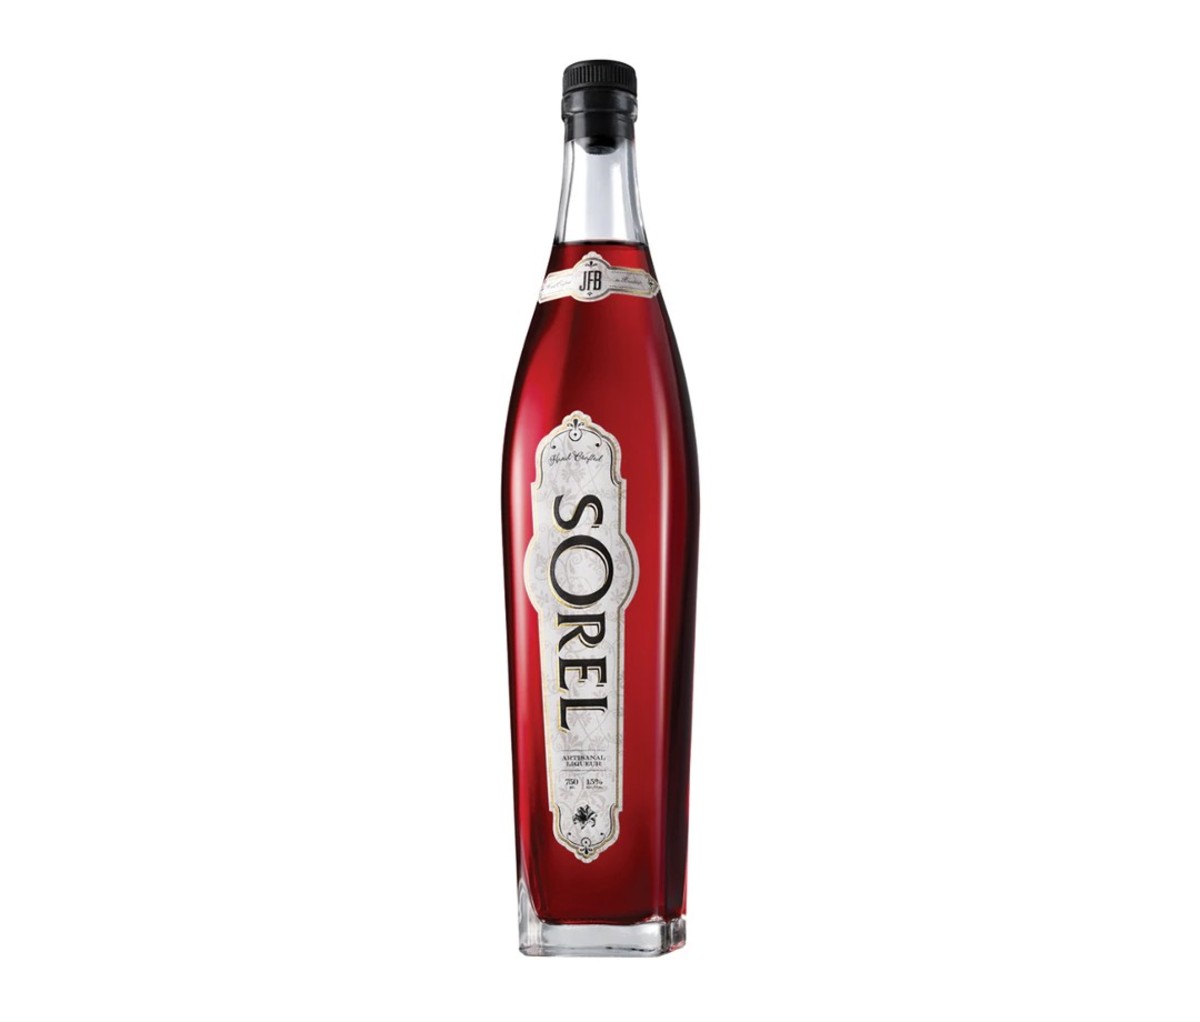 Bottle of Sorel Liqueur